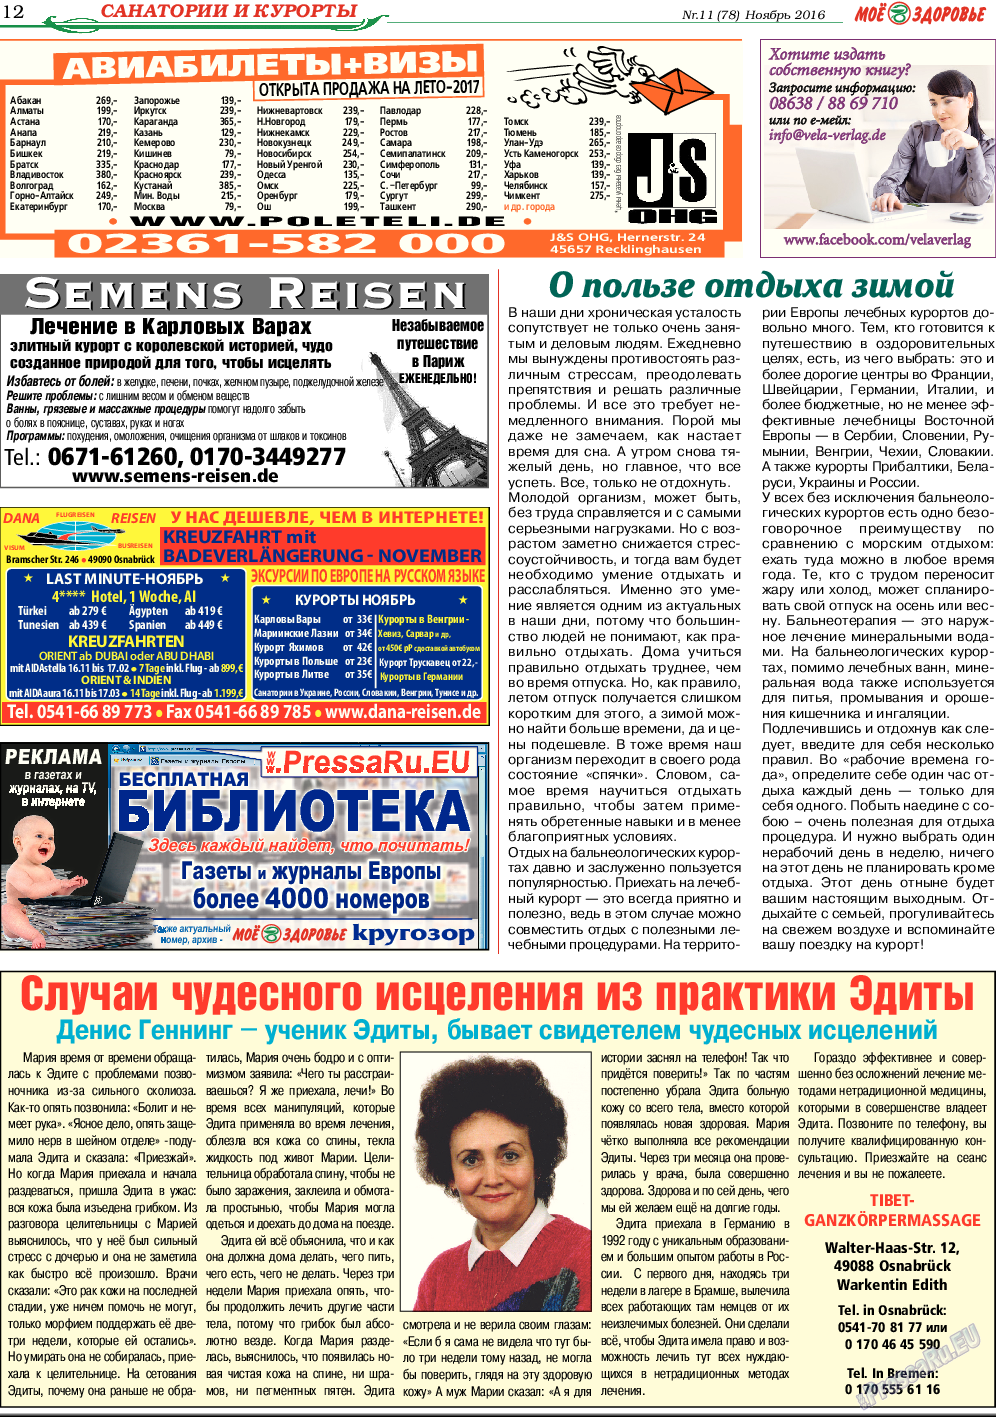 Кругозор, газета. 2016 №11 стр.12